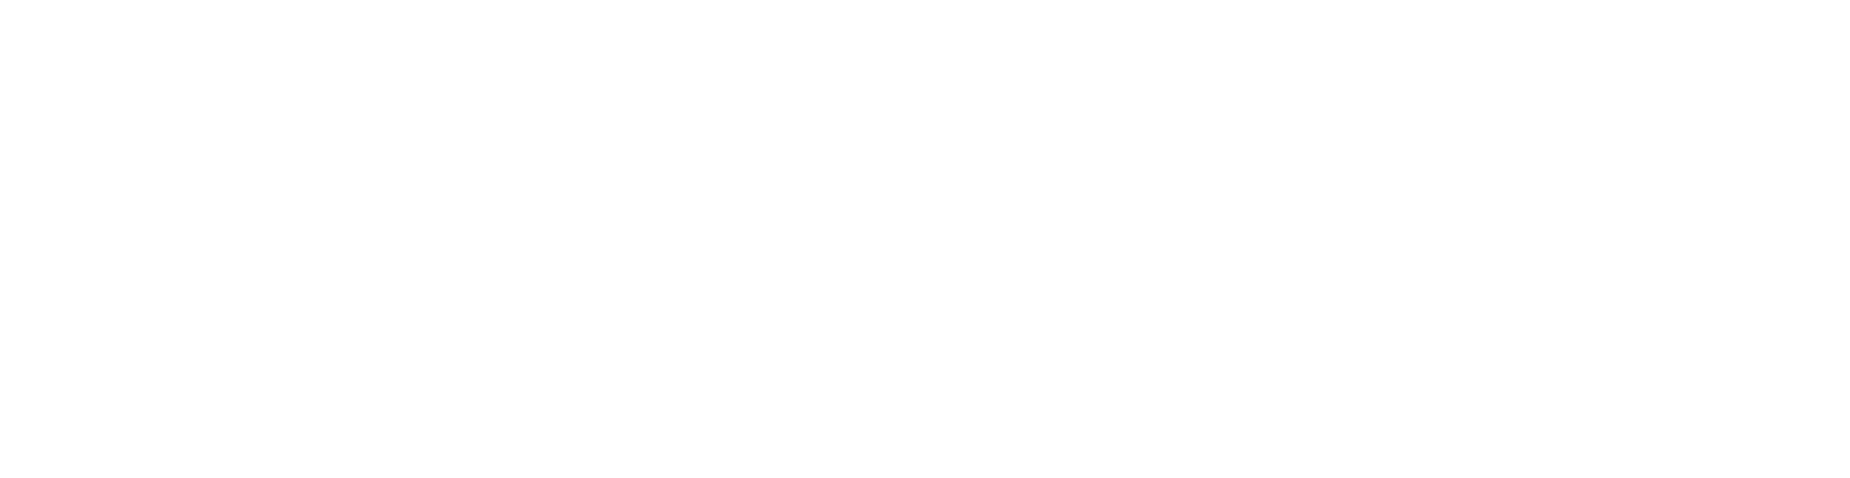 Square Modular